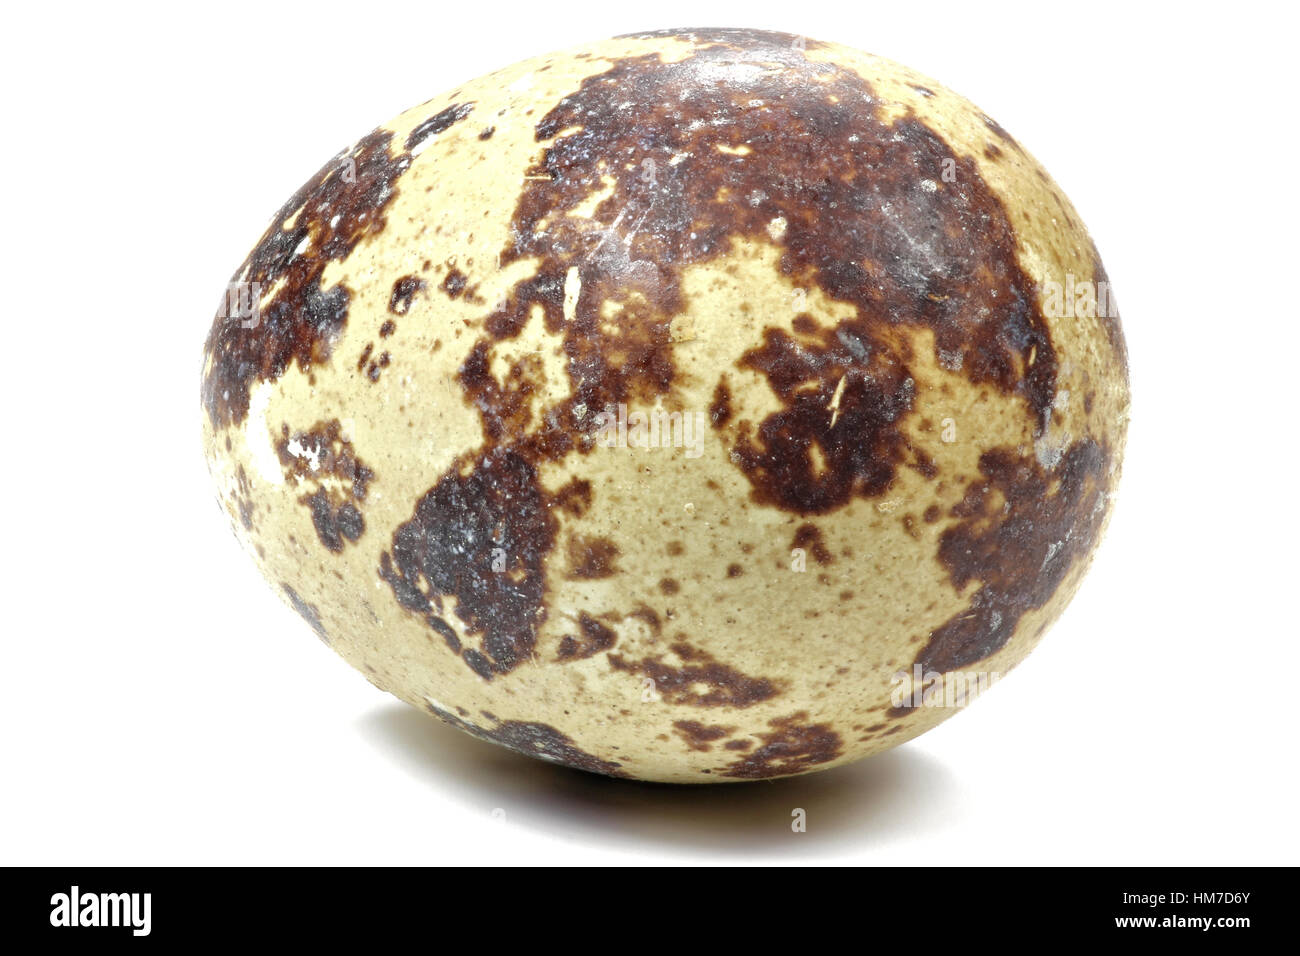 quail egg isolated on white background Stock Photo